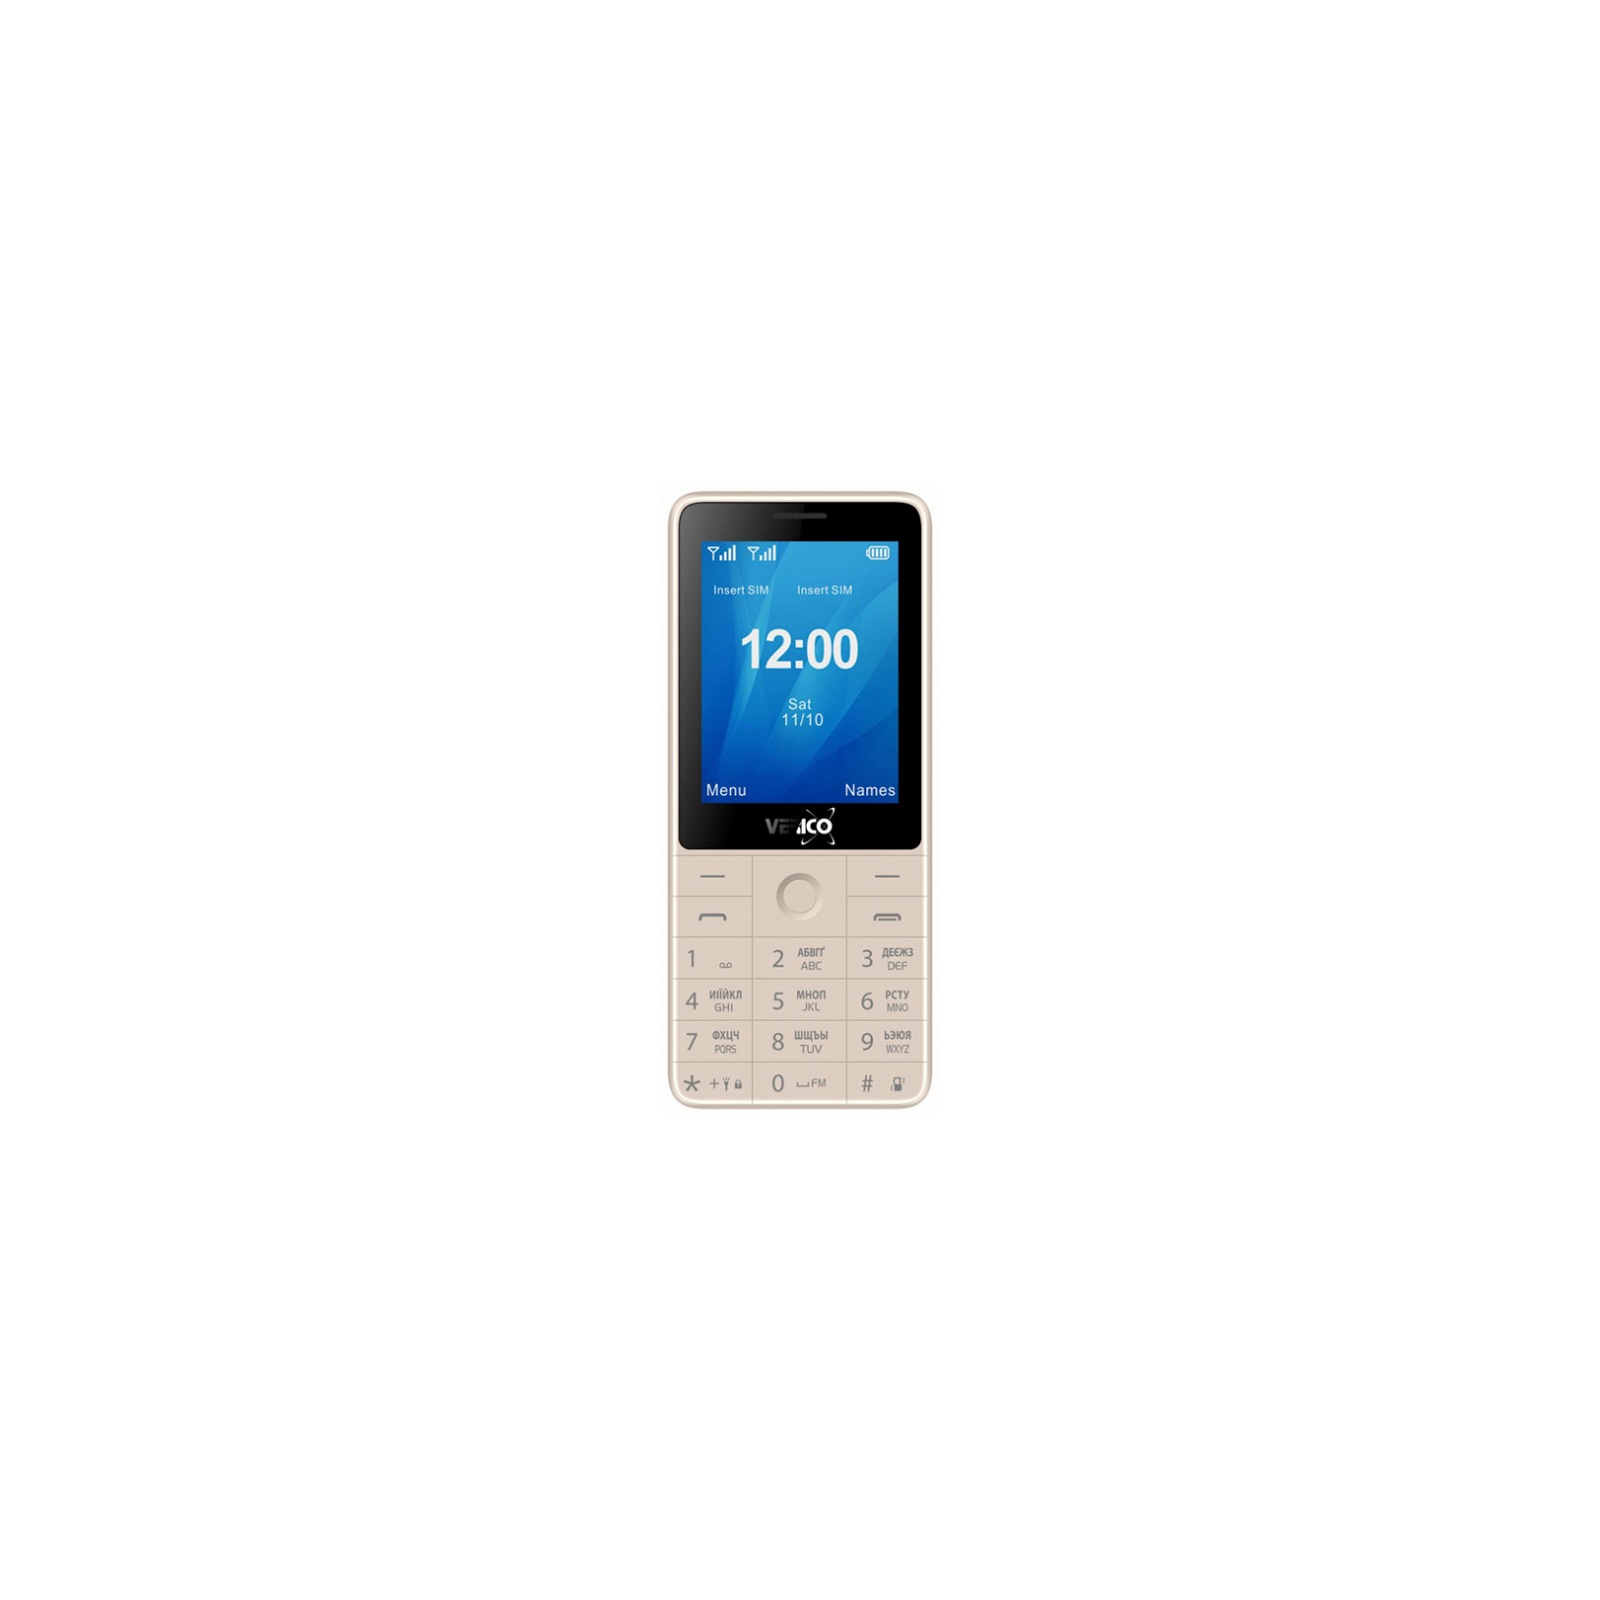 Мобильный телефон Verico Qin S282 Black (4713095606748)